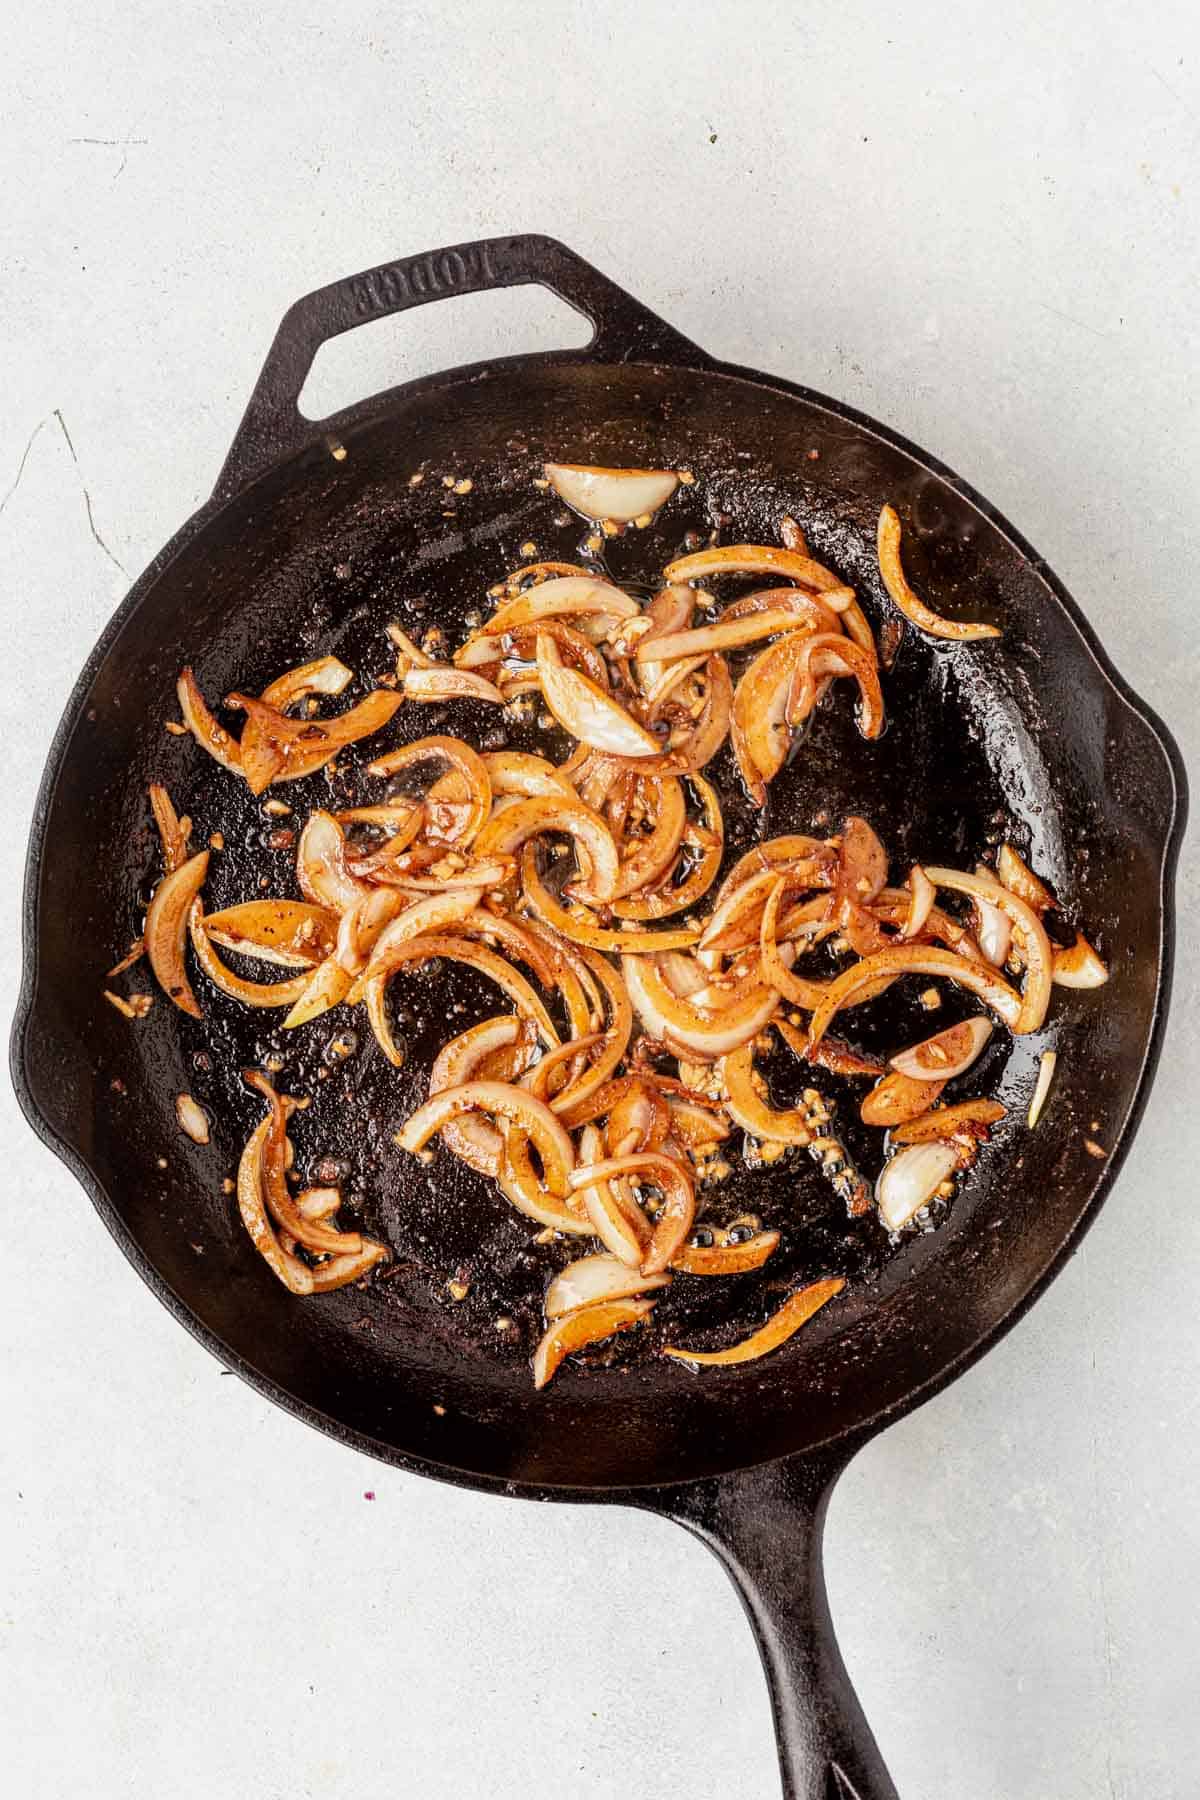 sauteed shallots and garlic in a skillet